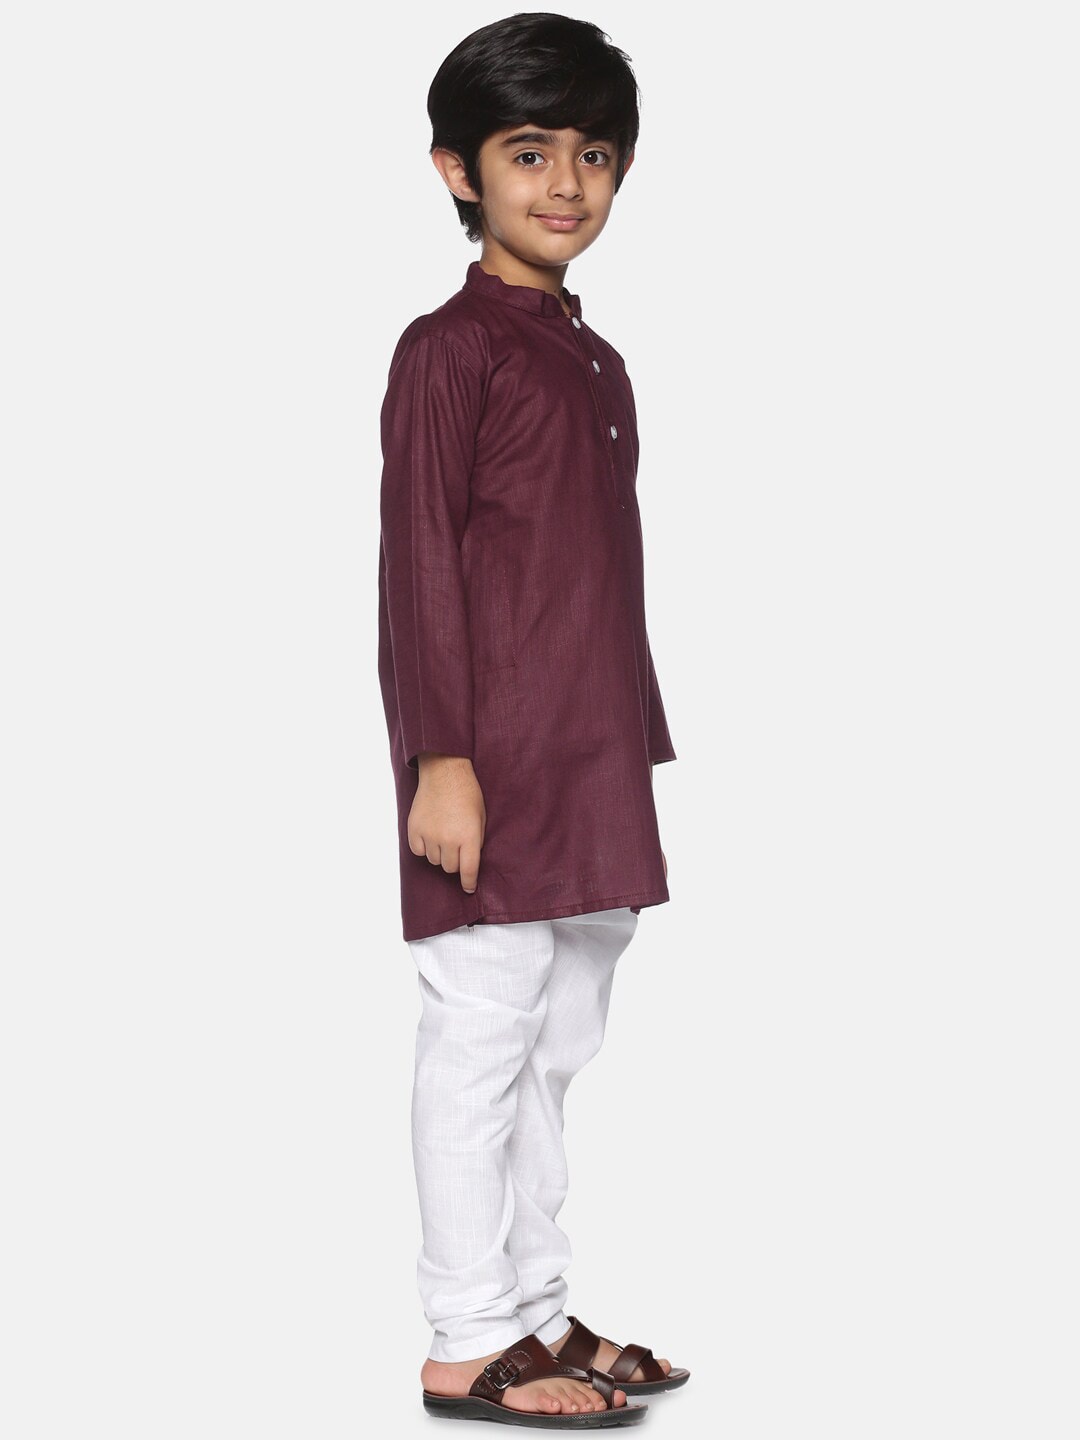 Sethukrishna Boys Maroon Pure Cotton Kurta with Pyjamas - Distacart